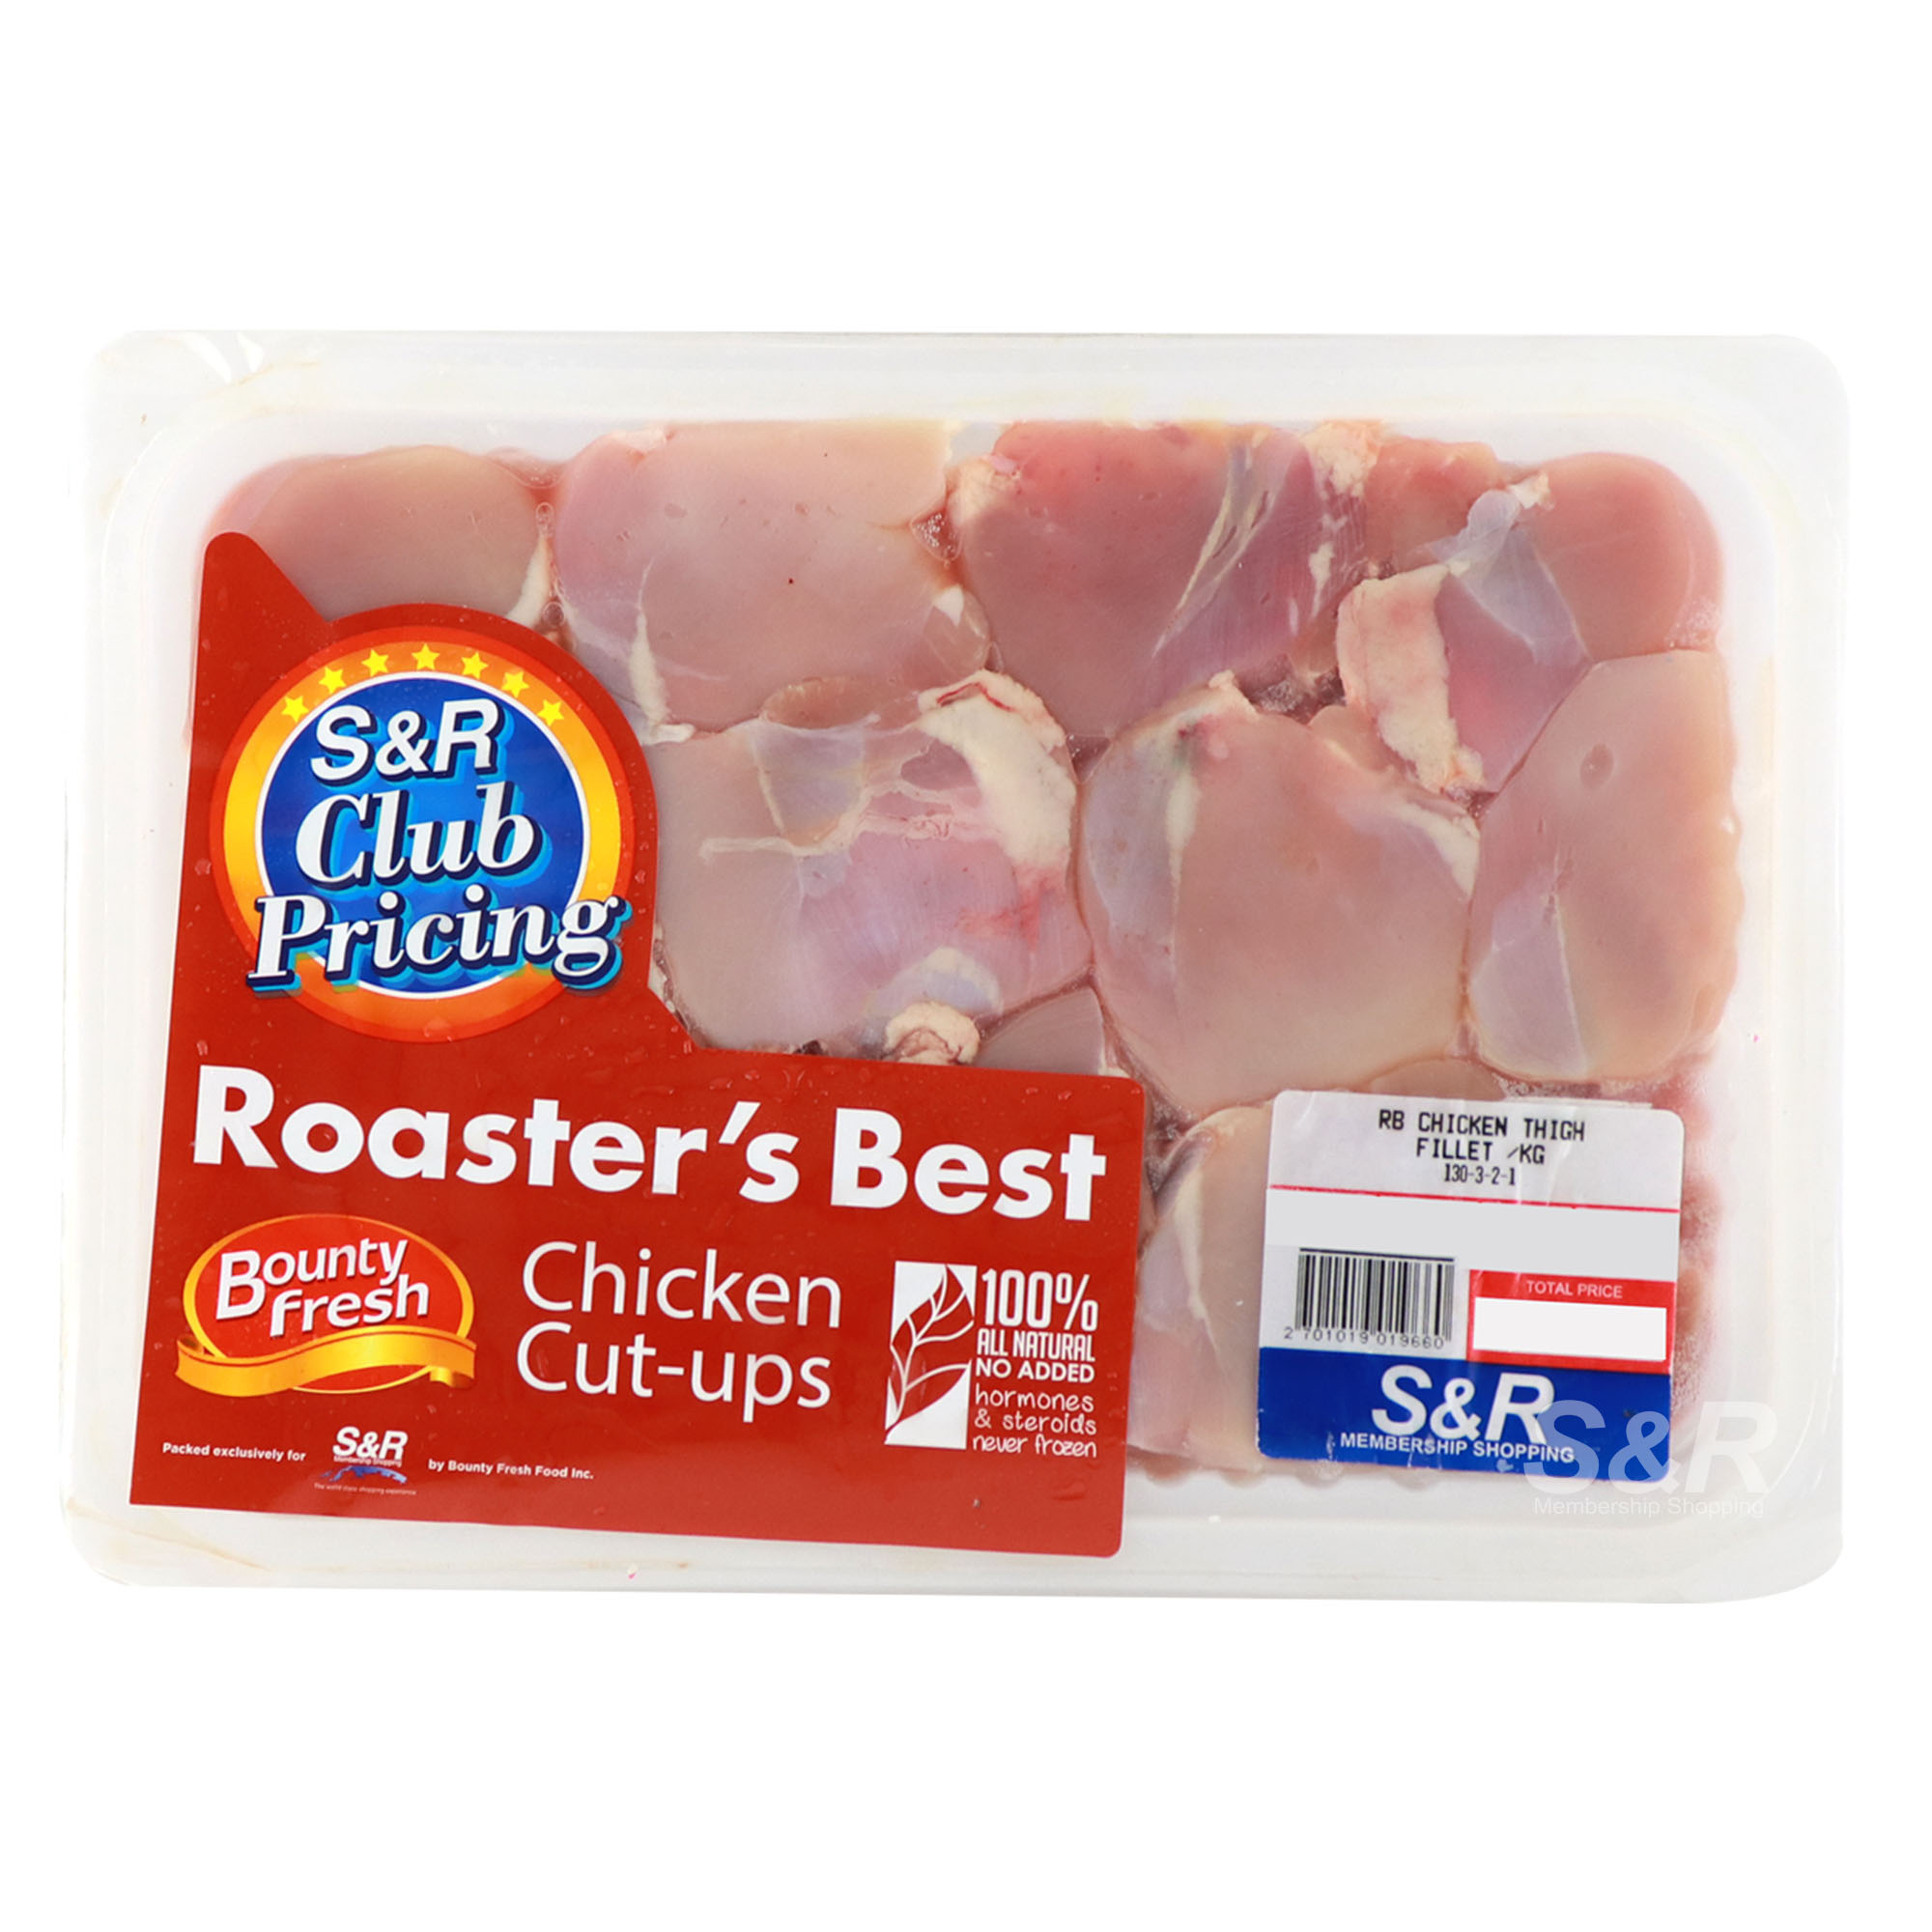 Roaster's Best Chicken Thigh Fillet Cut-ups approx. 2.5kg